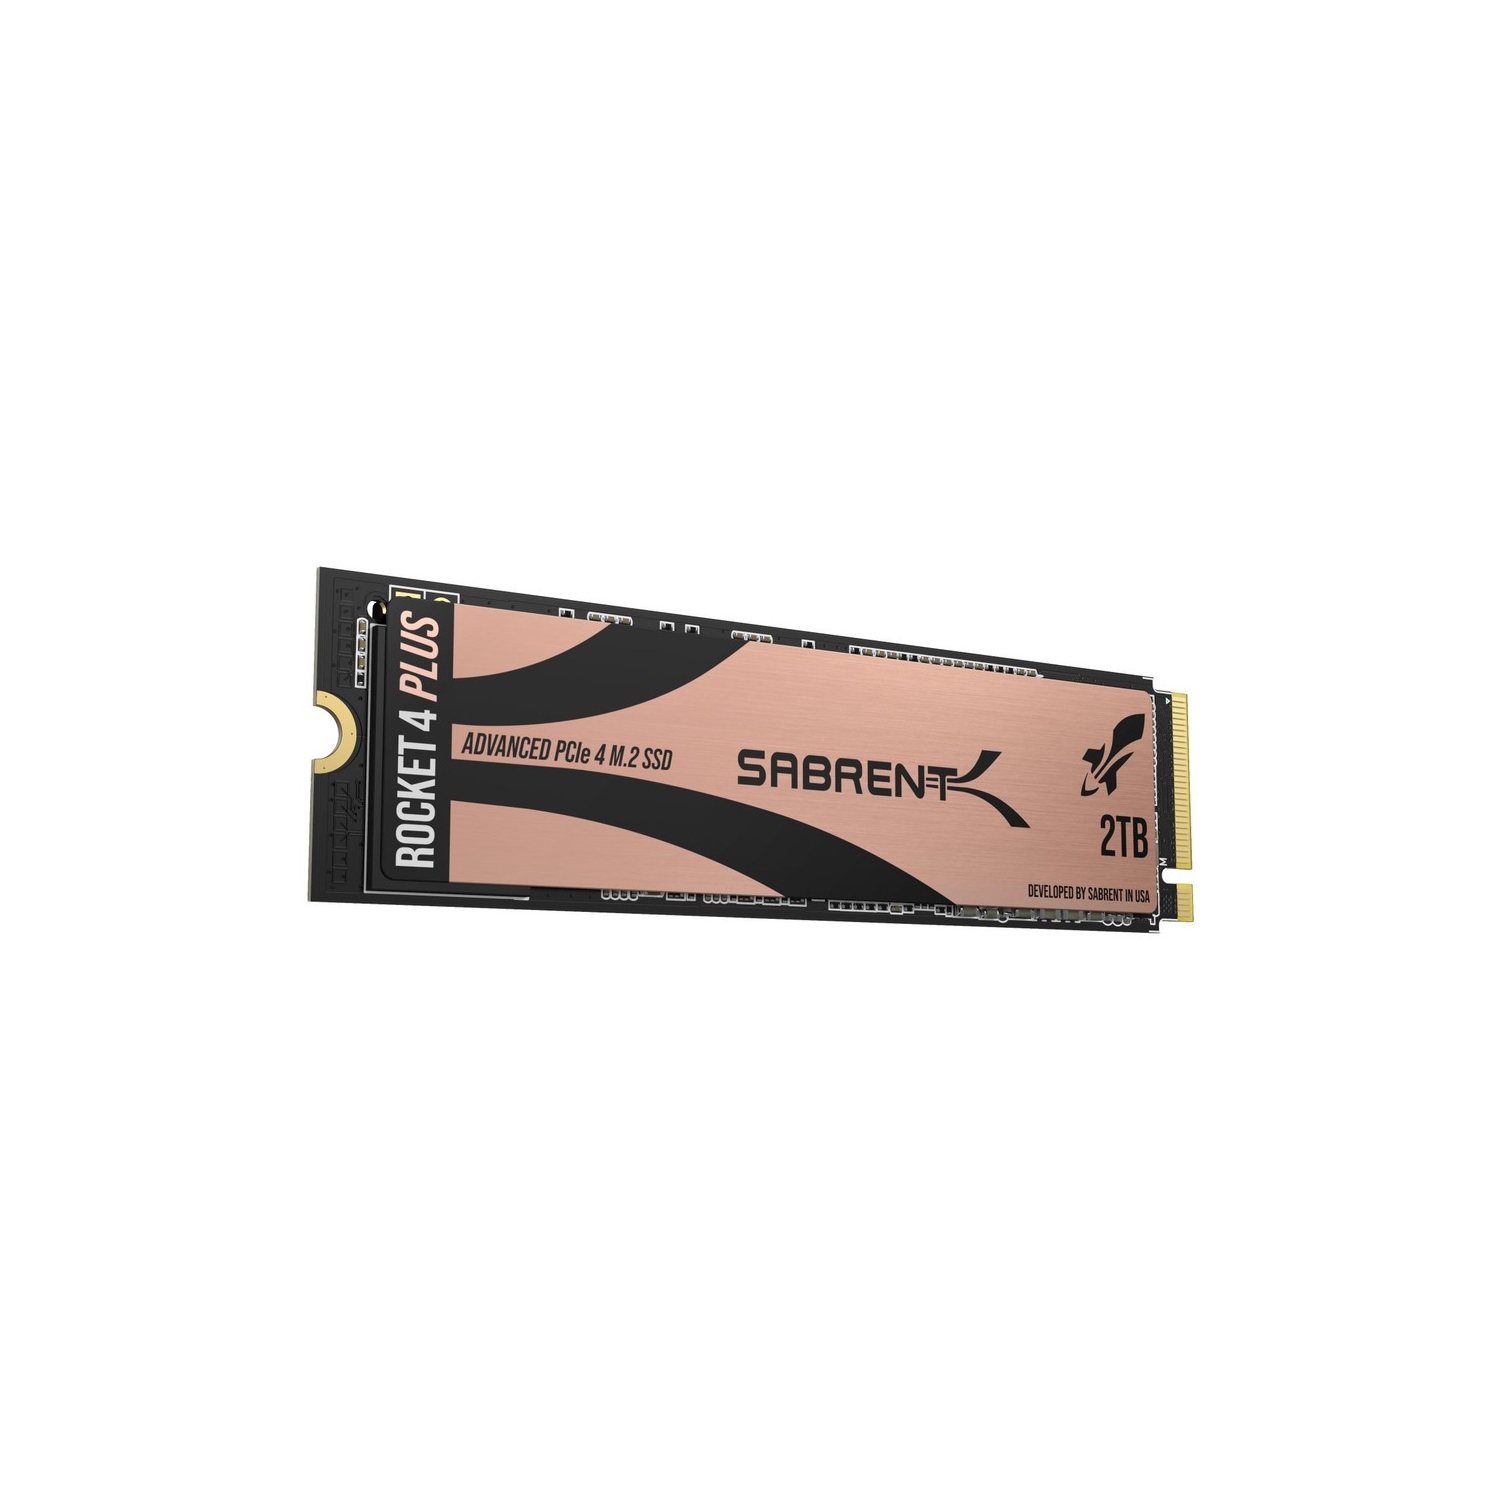 Brand New - Sabrent SB-RKT4P-2TB 2TB Rocket 4 PLUS NVMe 4.0 Gen4 PCIe M.2 Internal SSD Solid State Drive (SB-RKT4P-2TB)